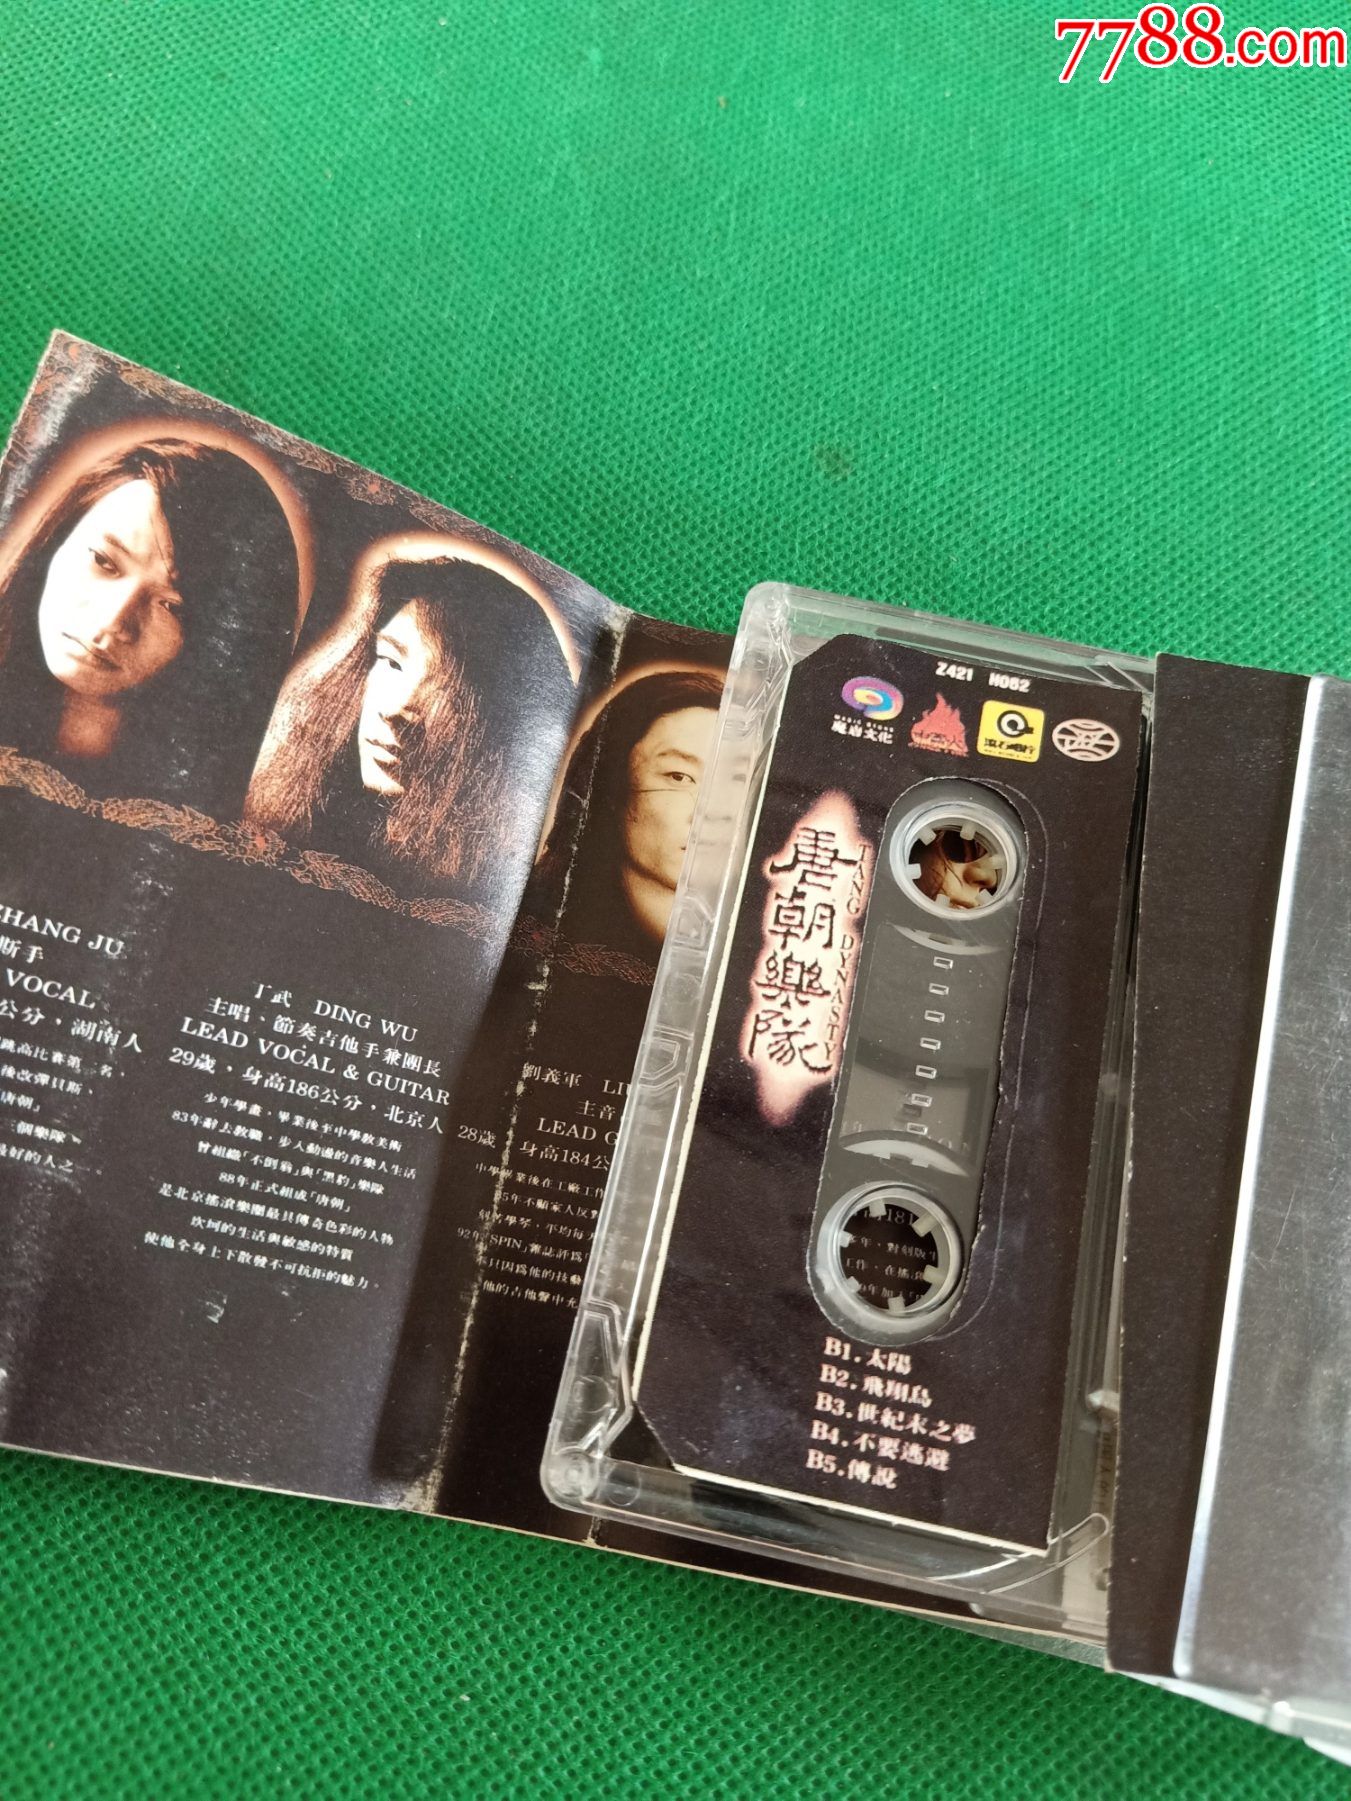 《唐朝乐队》磁带,中国火制作,魔岩授权,中国音乐家音像出版